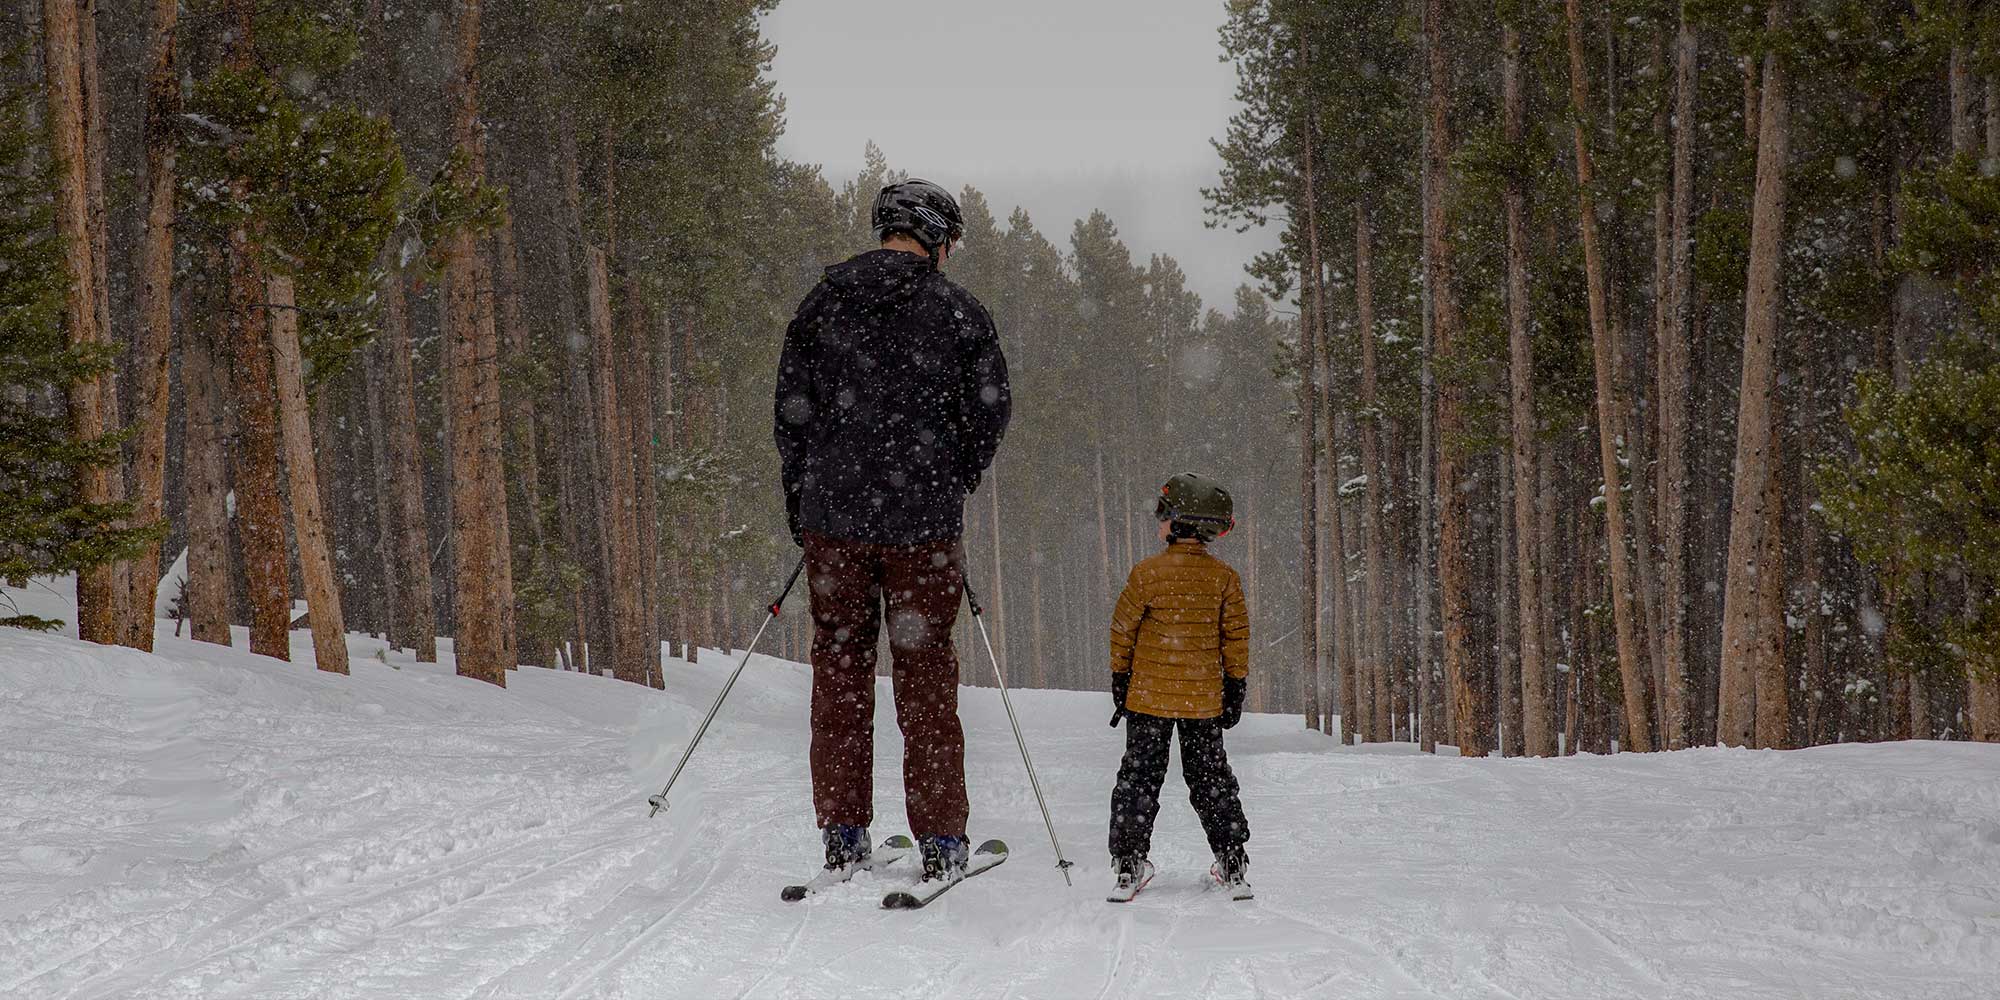 Snowy Range skiiers